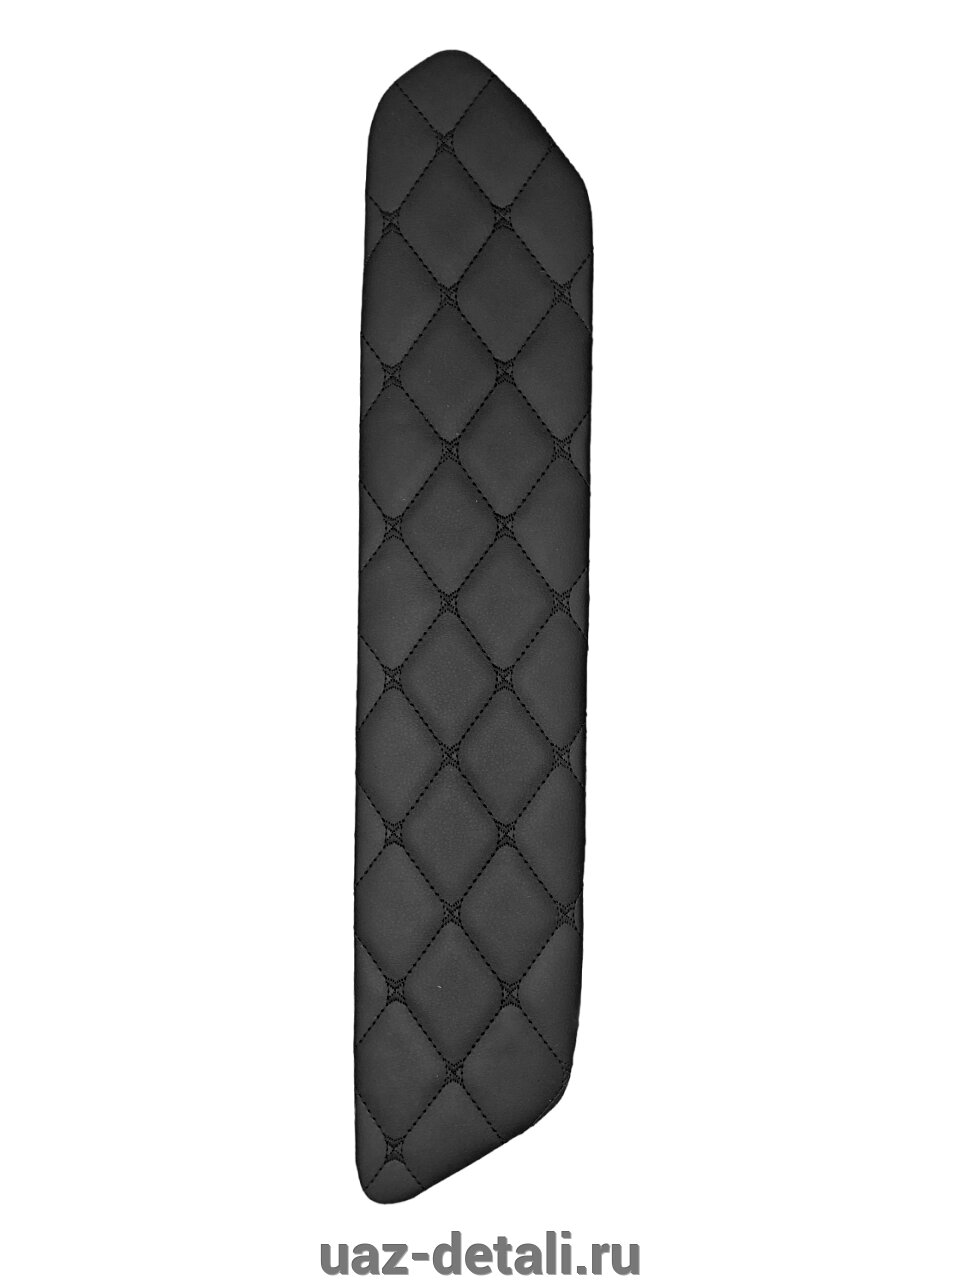 Вставки дверные LADA Granta (Гранта) на ДВП, декоративный черный ромб черная нить 4 шт от компании УАЗ Детали - магазин запчастей и тюнинга на УАЗ - фото 1